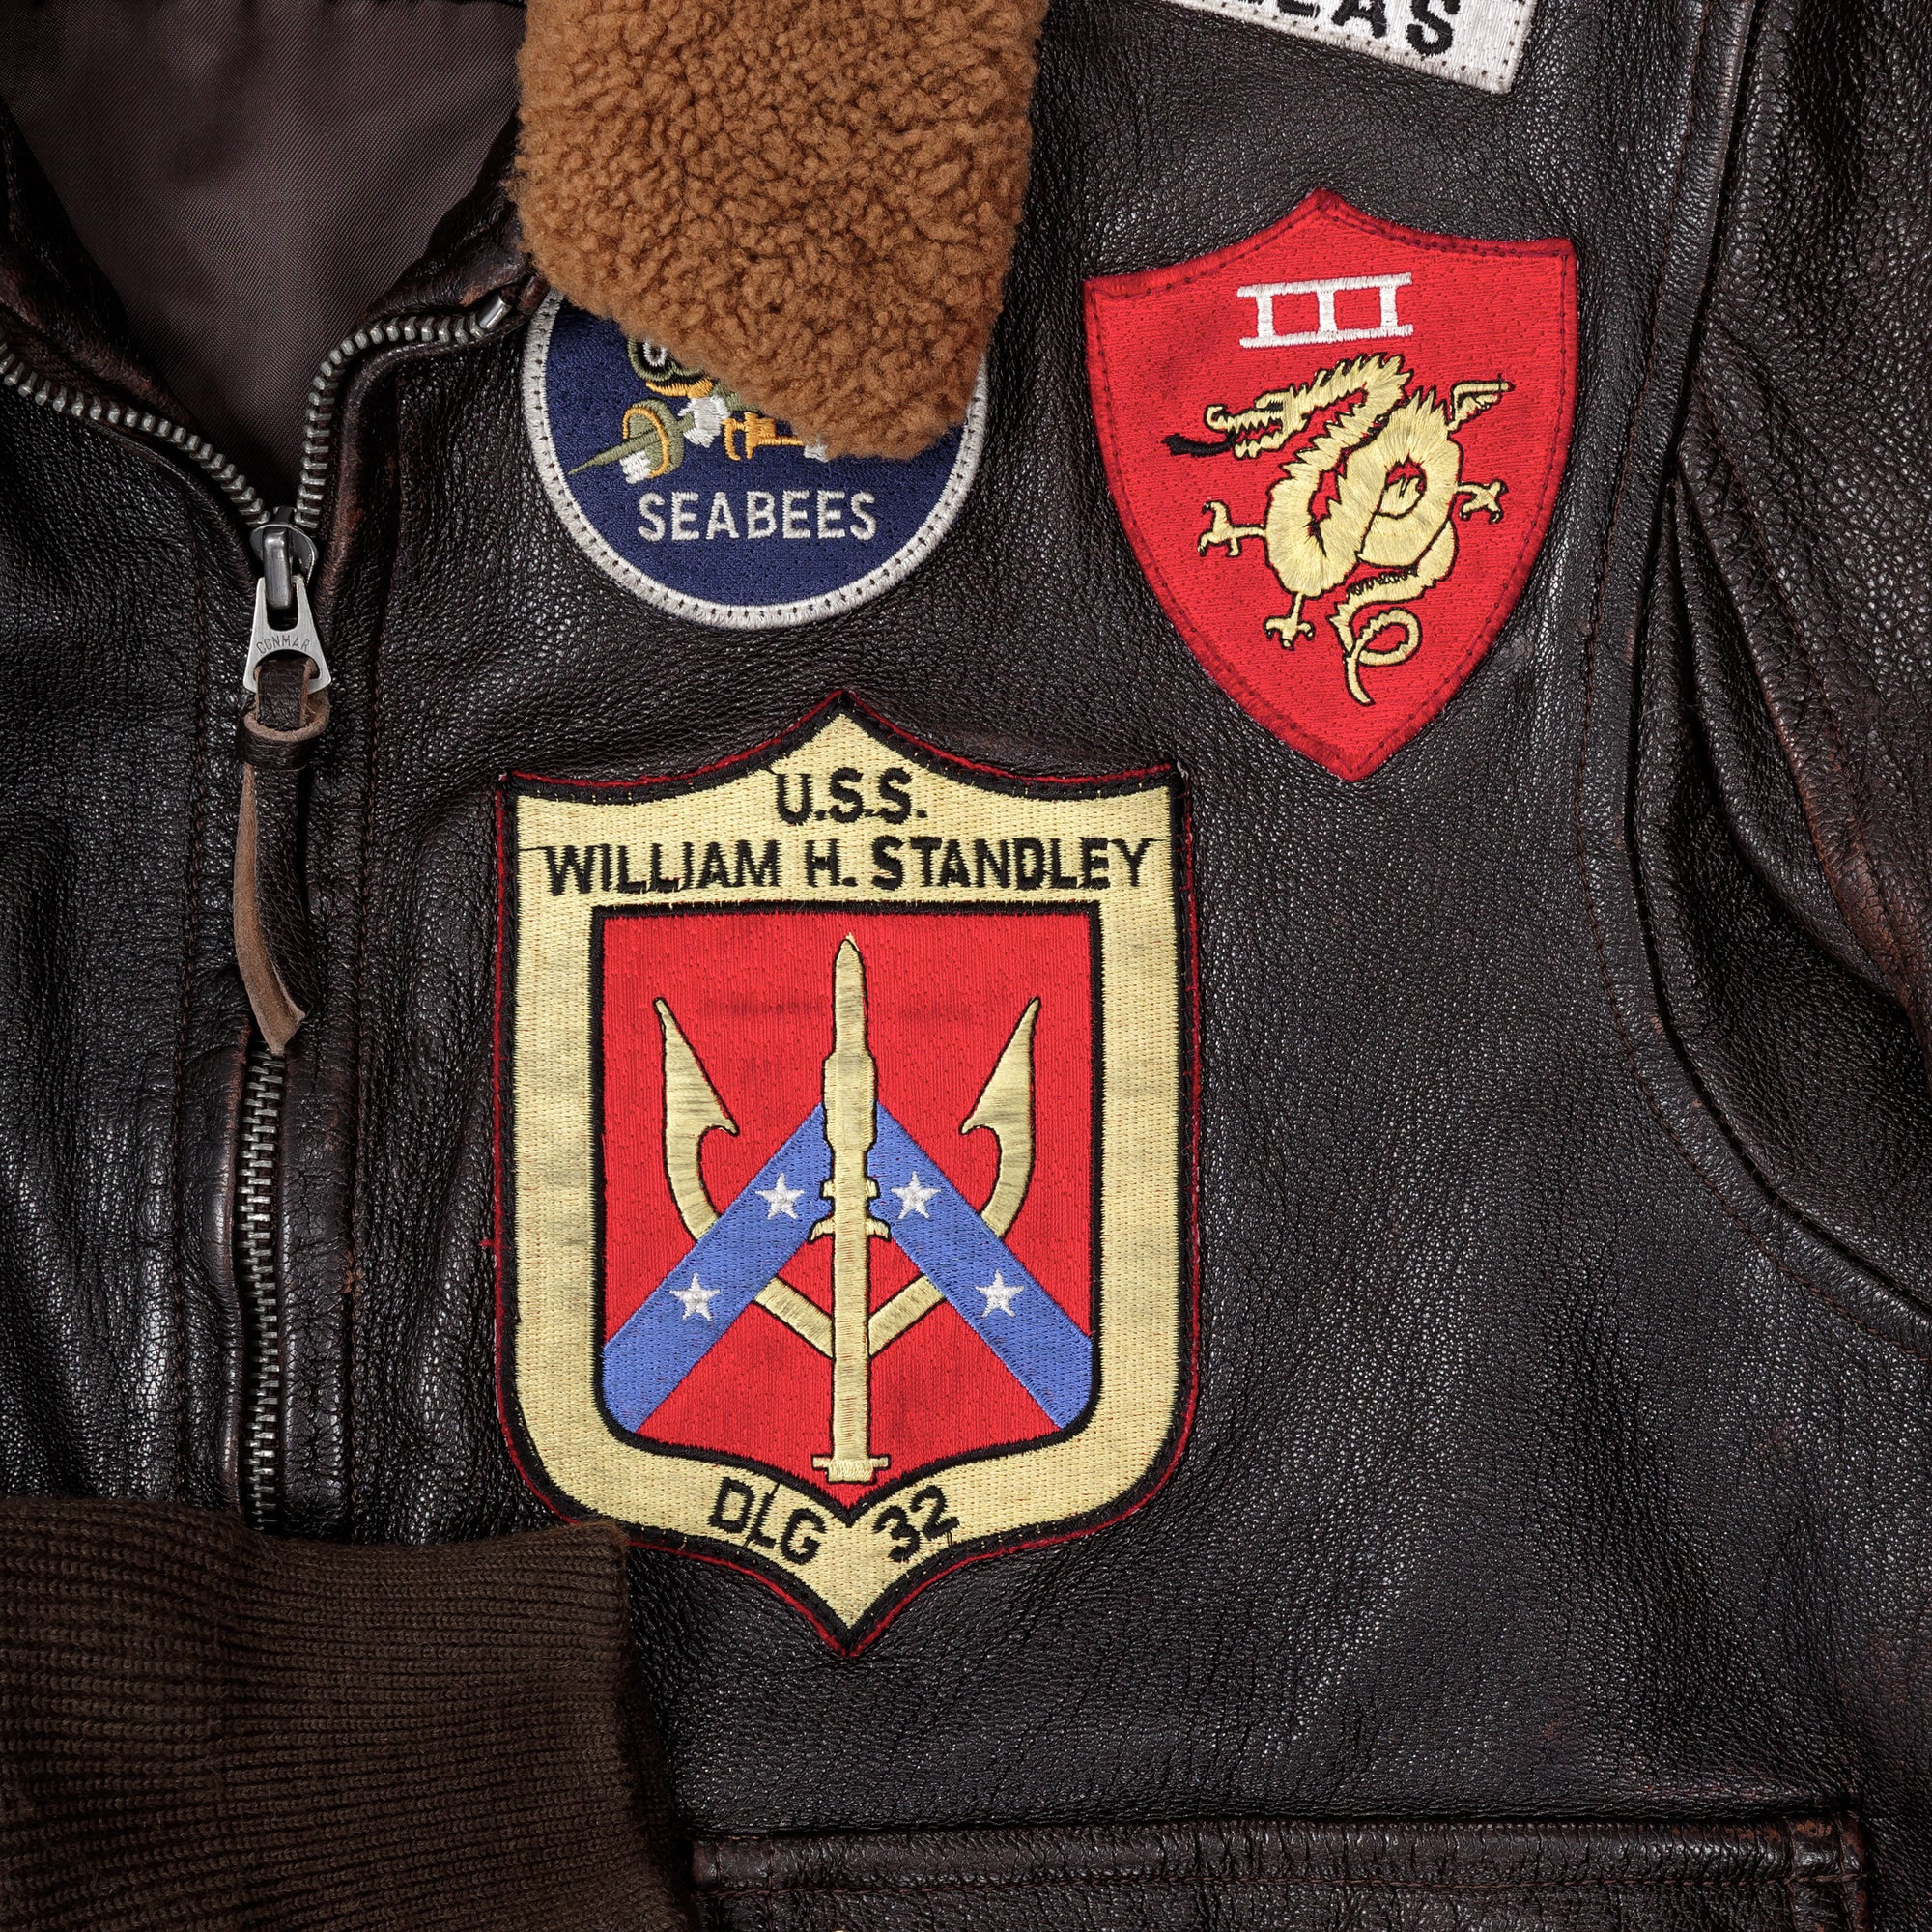 Top Gun Maverick Bomber Jacket